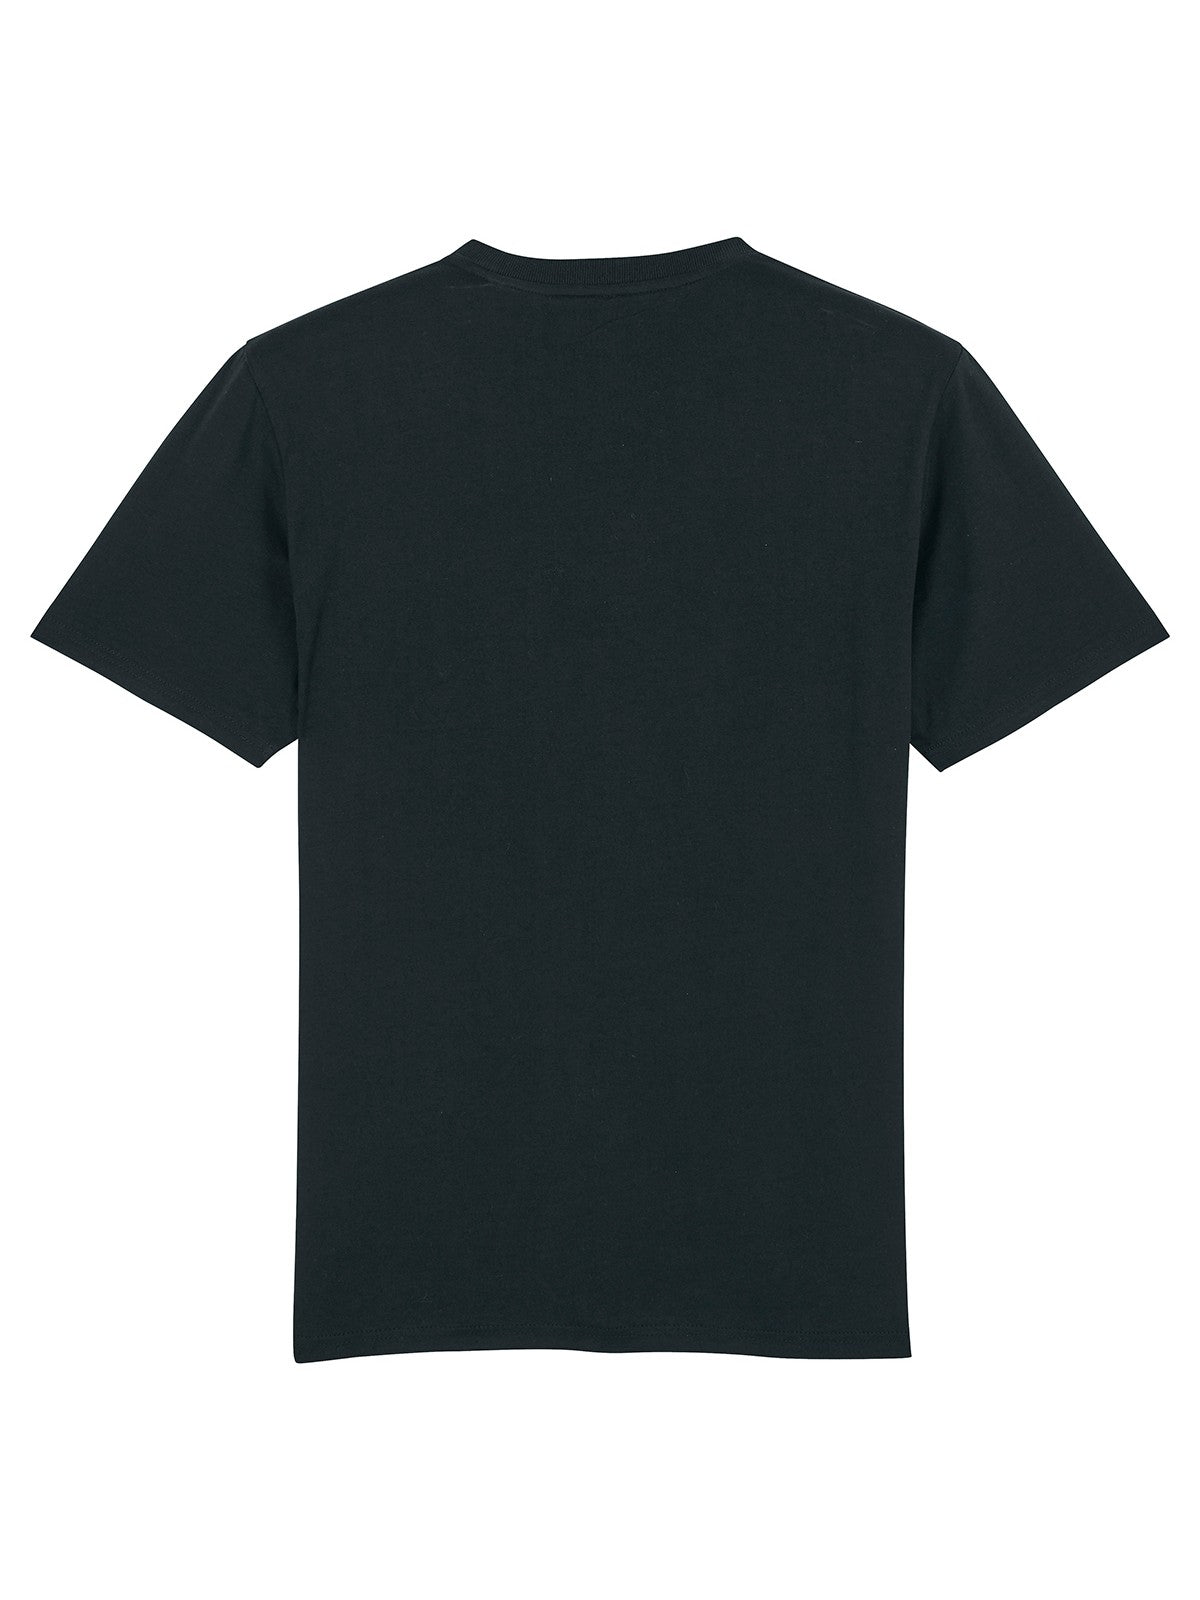 BARON FILOU T-Shirt et Polo hommes FILOU V Noir